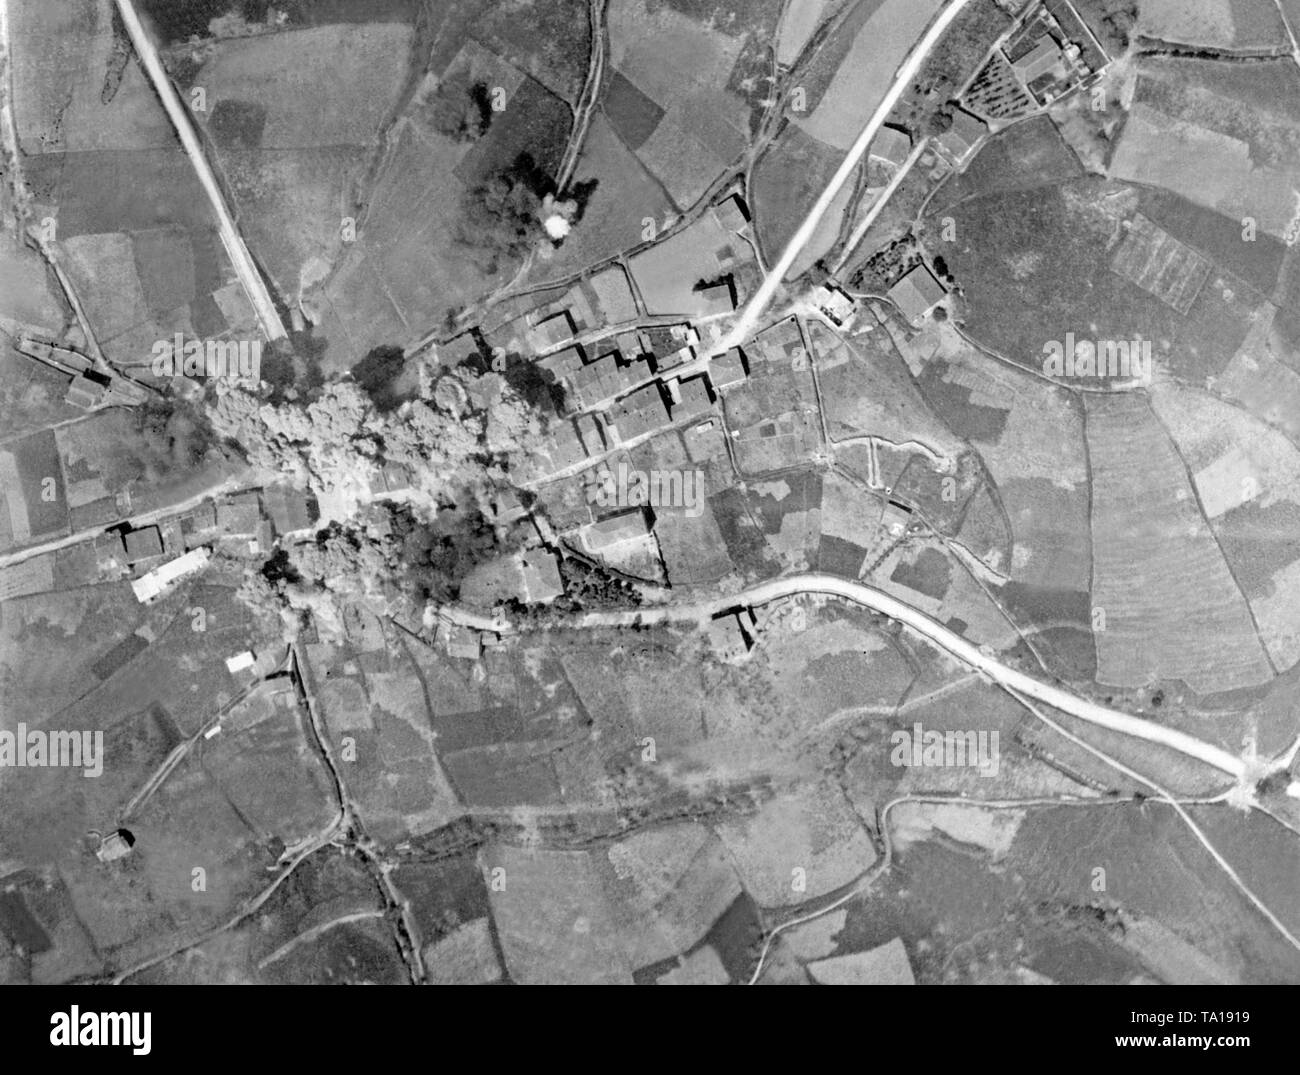 Luftaufnahme von einem Bombenanschlag von der Italienischen Luftwaffe der Corpo Truppe Volontarie (CTV) auf einem Dorf in den Spanischen Bürgerkrieg. Dargestellt, die Auswirkungen und die Rauch- und Staubwolken des Angriffs. Stockfoto